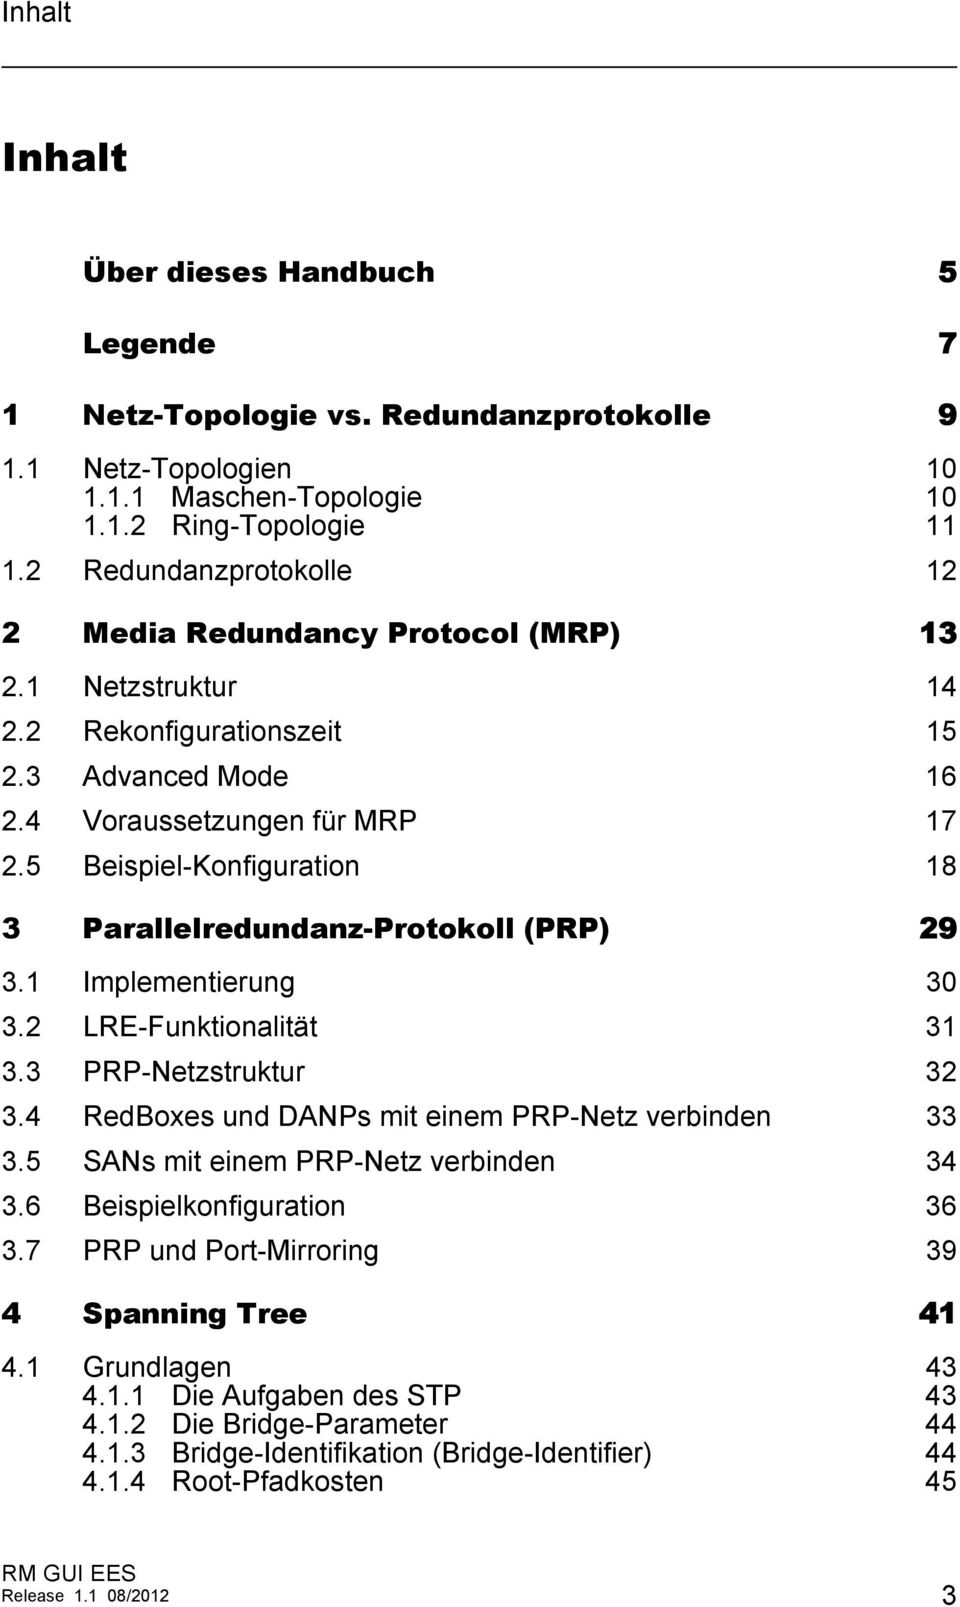 5 Beispiel-Konfiguration 18 3 Parallelredundanz-Protokoll (PRP) 29 3.1 Implementierung 30 3.2 LRE-Funktionalität 31 3.3 PRP-Netzstruktur 32 3.4 RedBoxes und DANPs mit einem PRP-Netz verbinden 33 3.